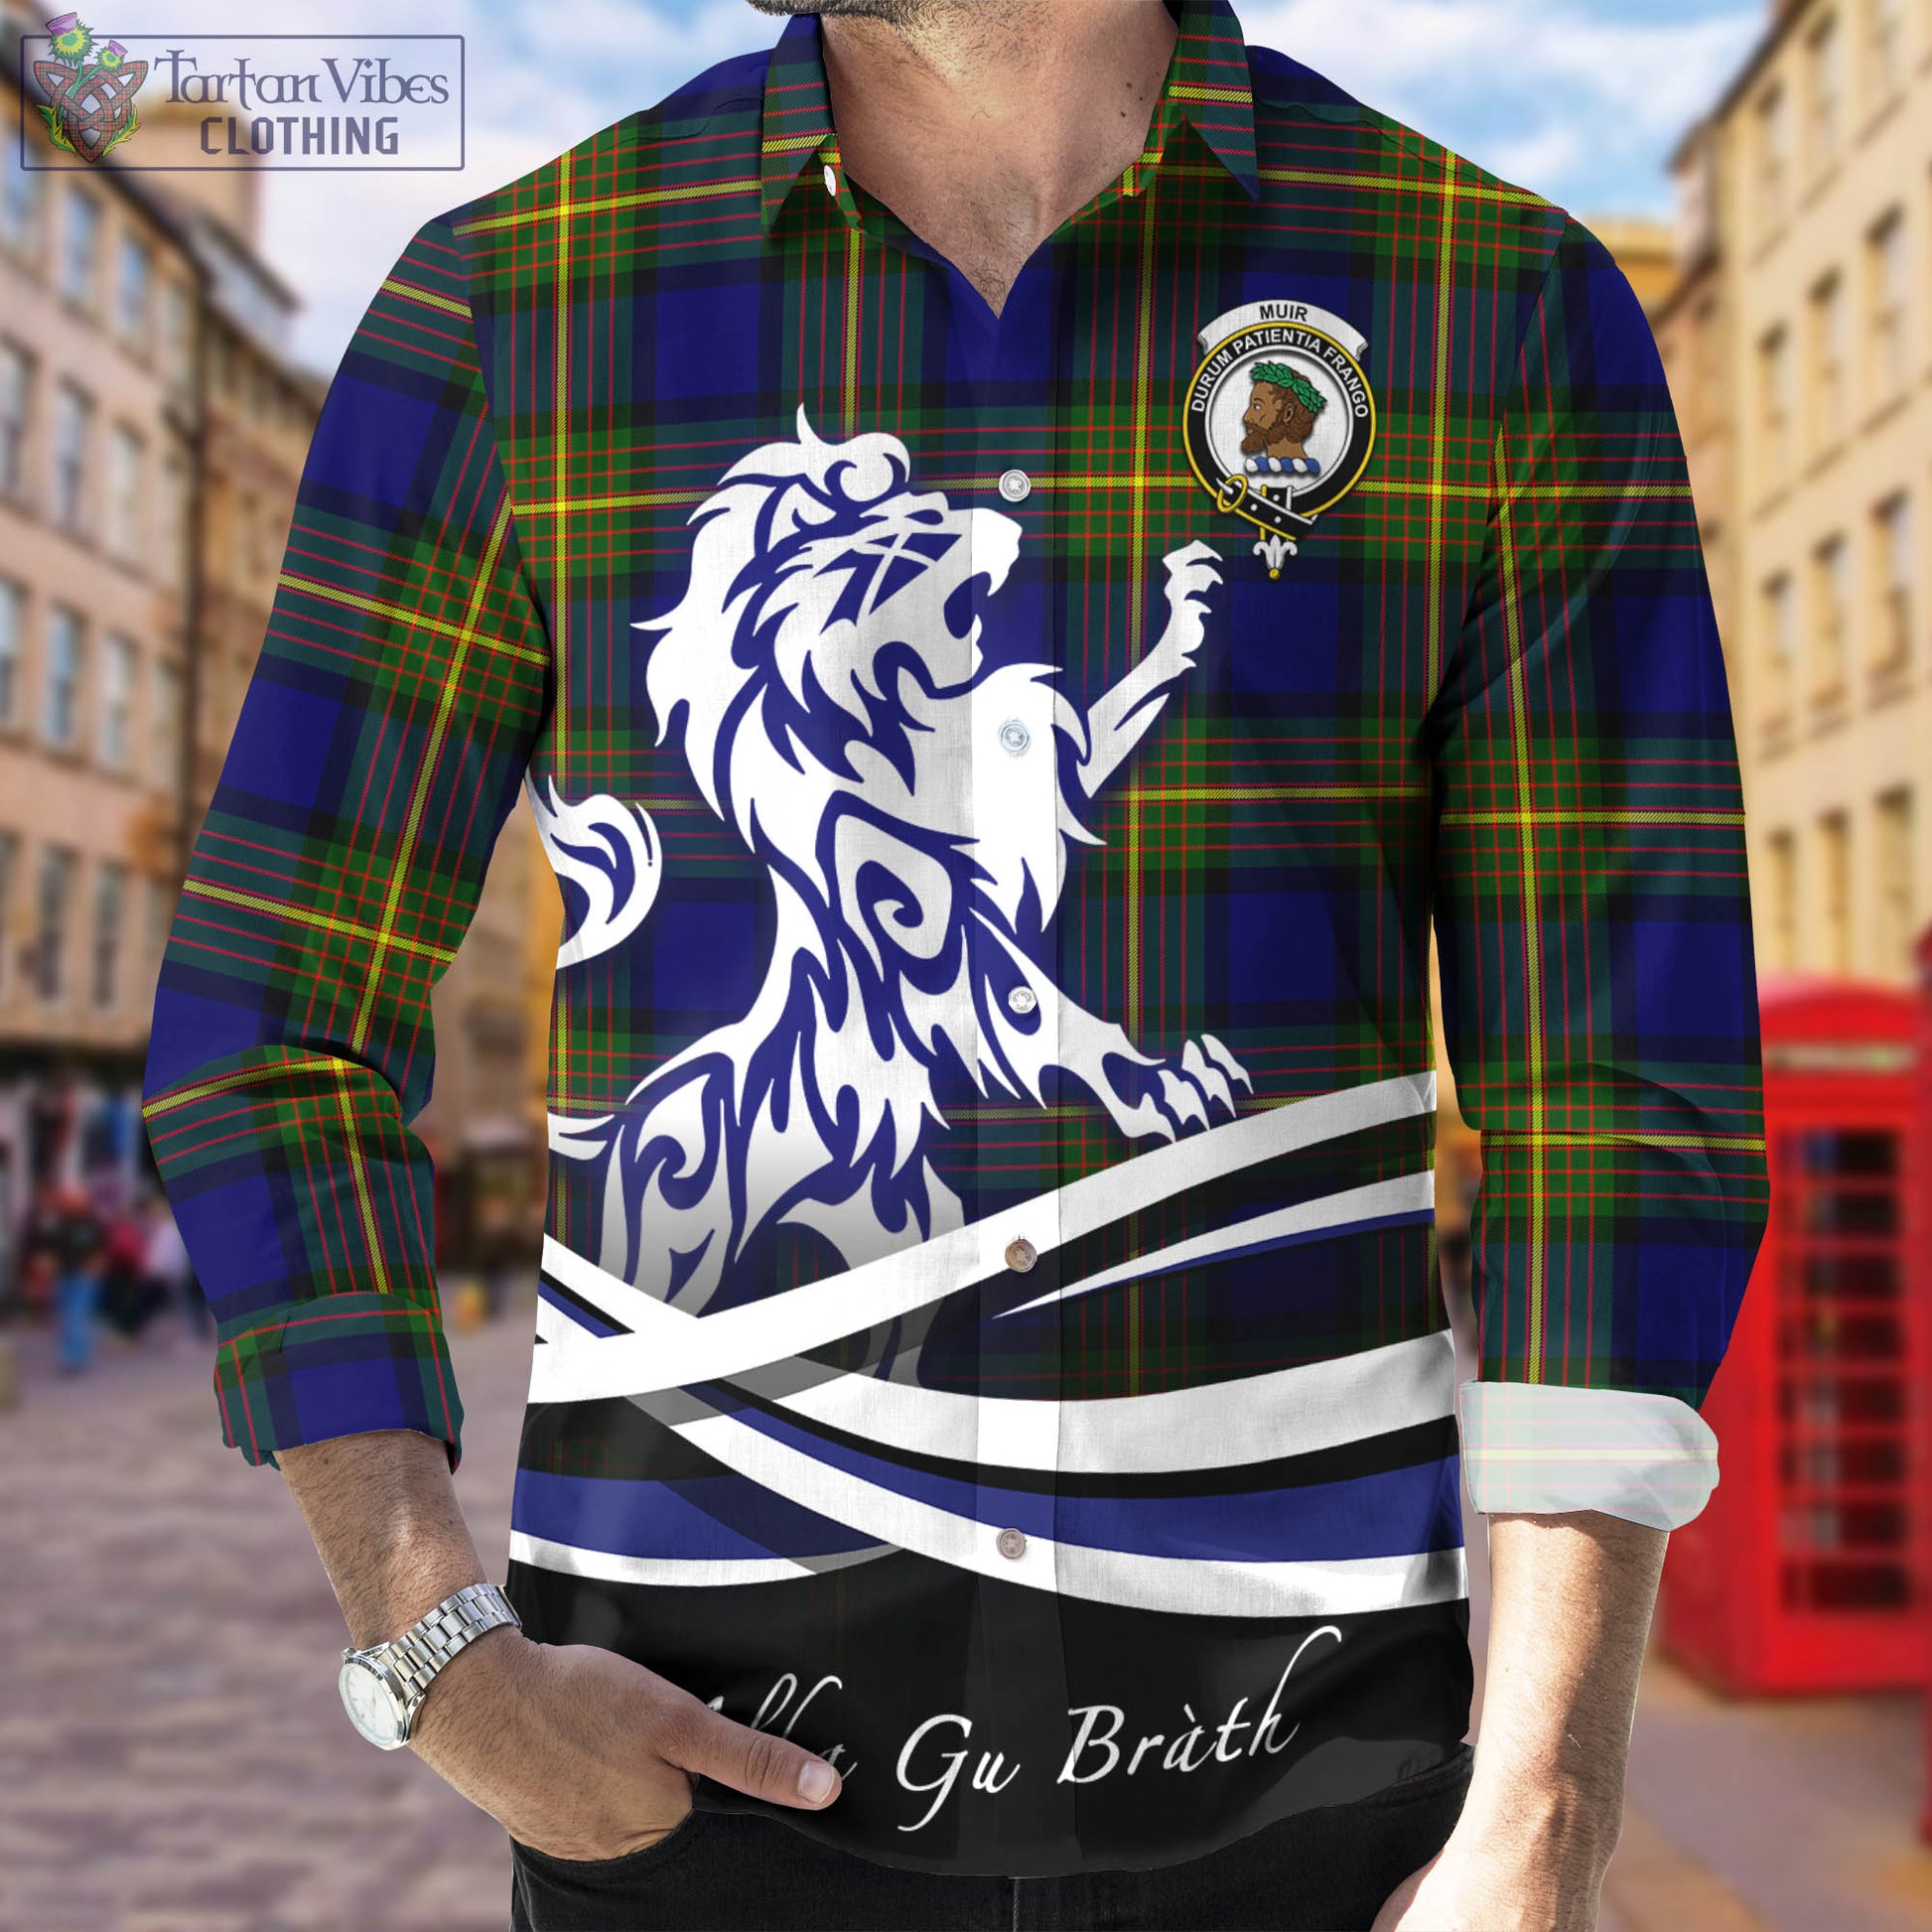 muir-tartan-long-sleeve-button-up-shirt-with-alba-gu-brath-regal-lion-emblem